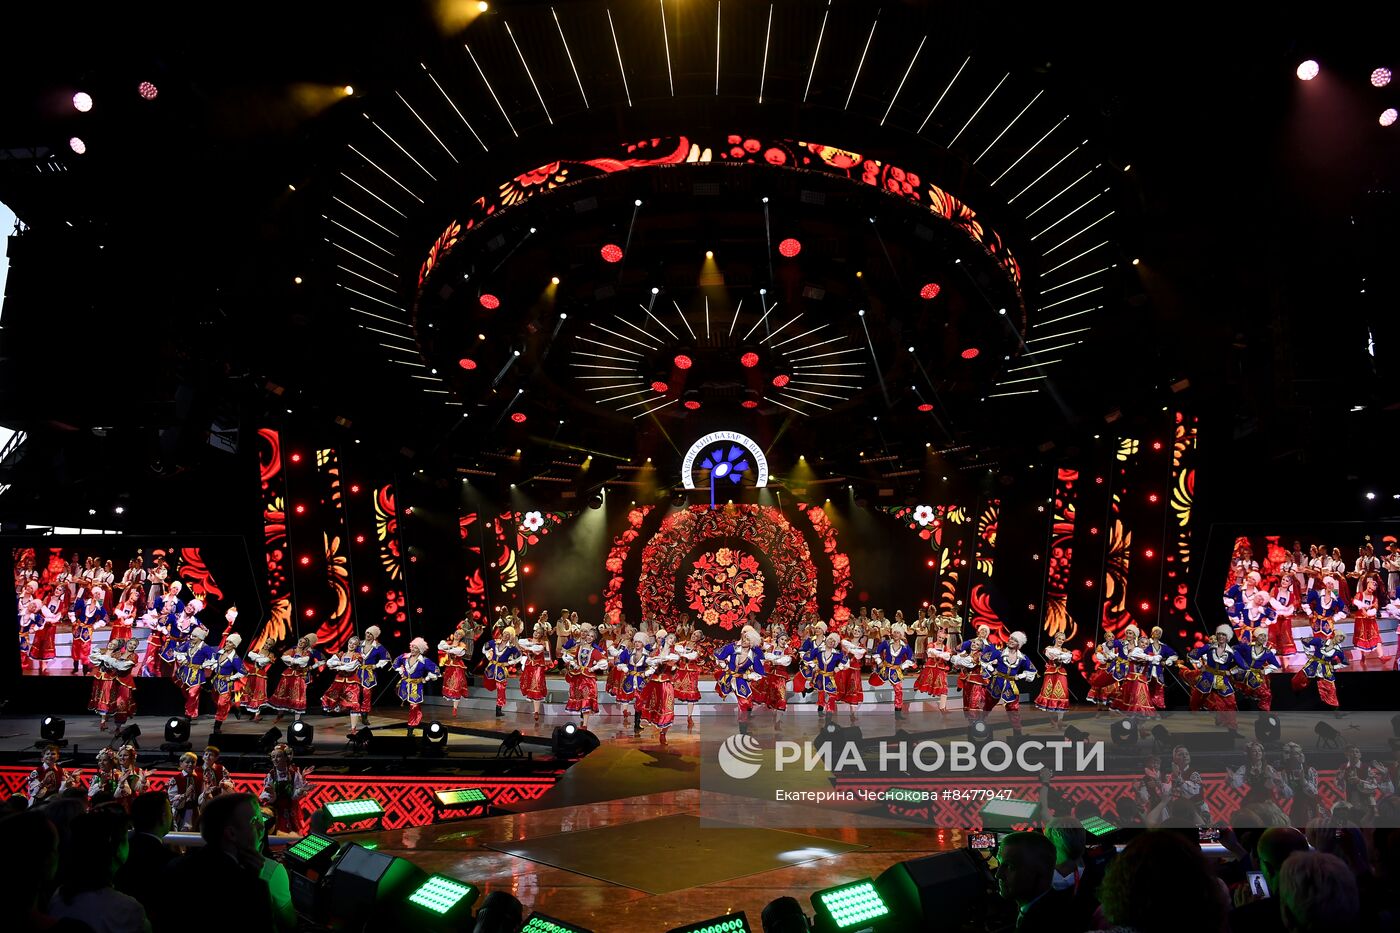 Открытие XXXII Международного фестиваля искусств "Славянский базар в Витебске" 